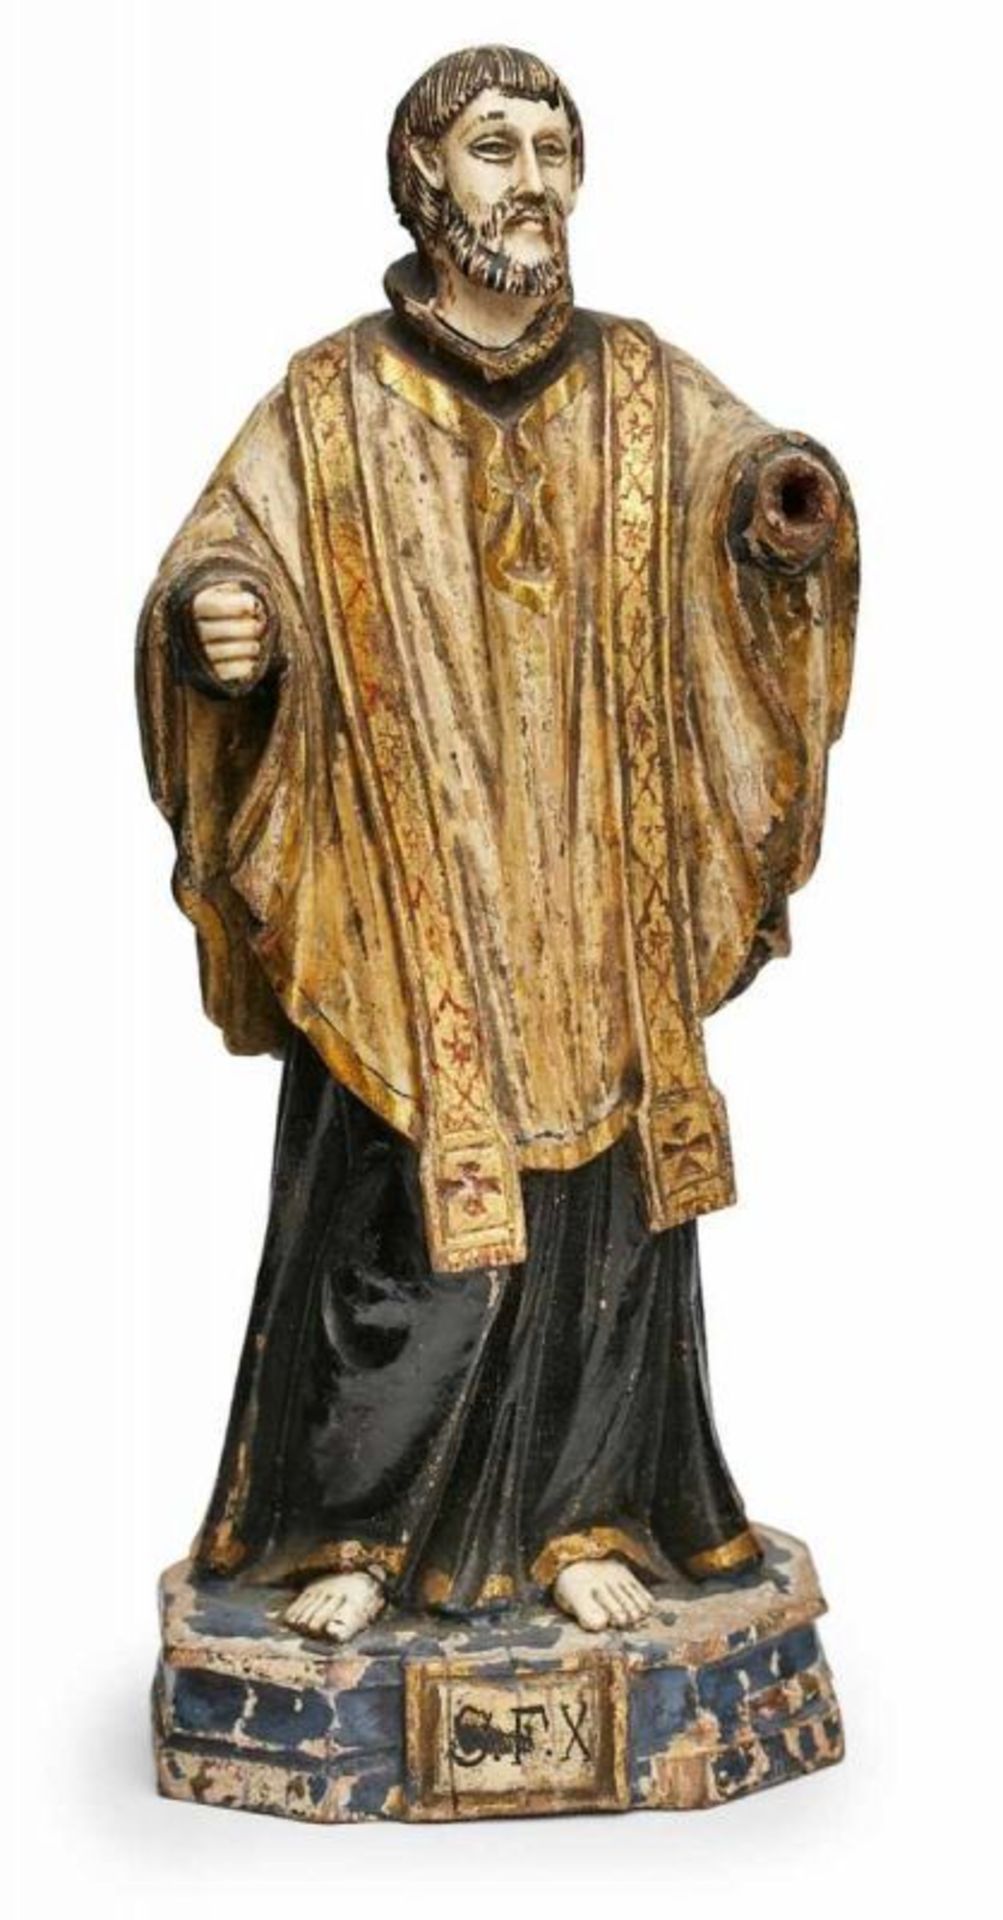 Kl. Figur "Heiliger", südländisch 19. Jh. Holz, vollrd. geschnitzt, farbig u. partiell gold - Bild 3 aus 3